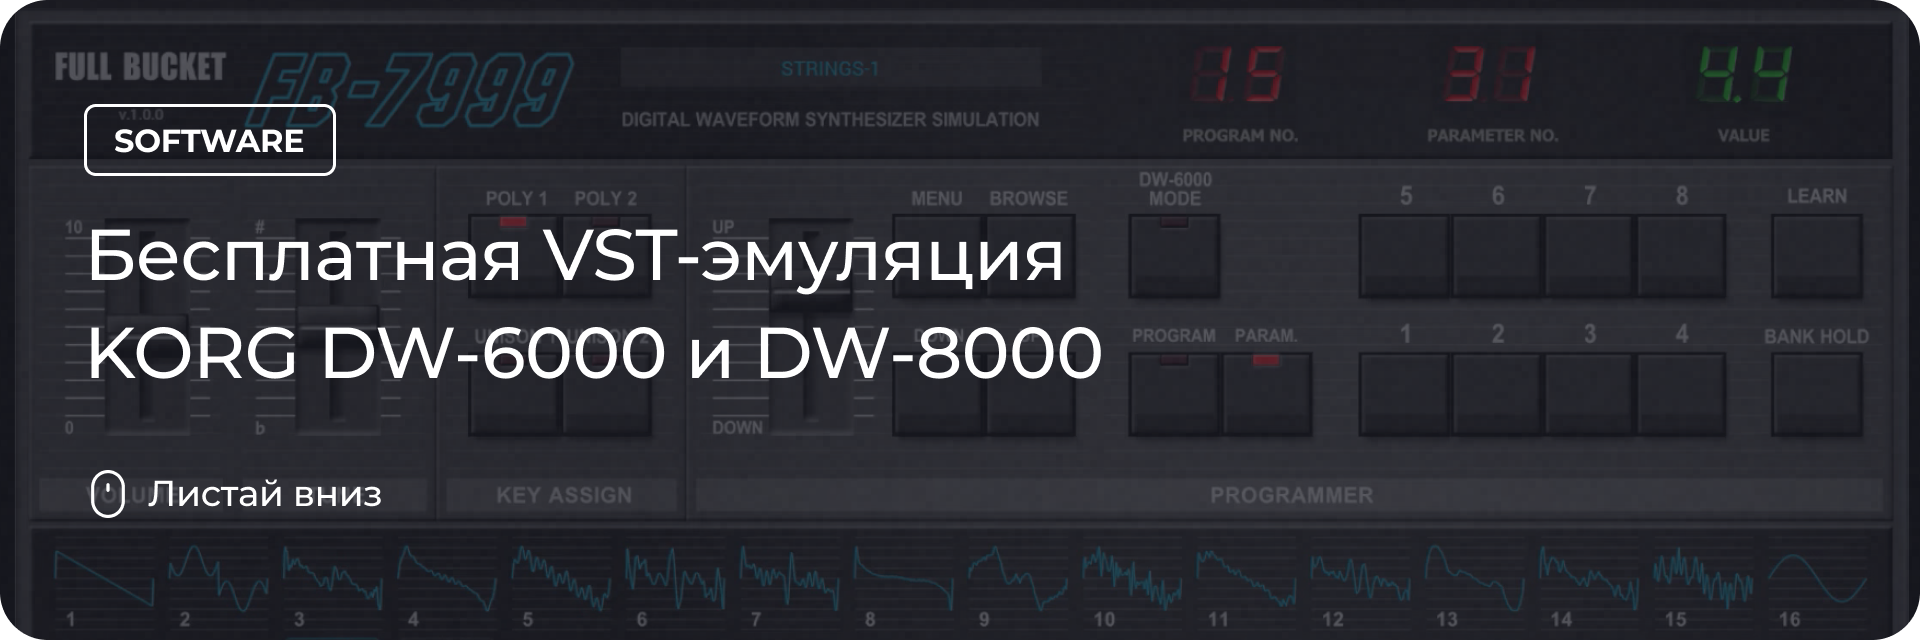 Бесплатная VST-эмуляция KORG DW-6000 и DW-8000